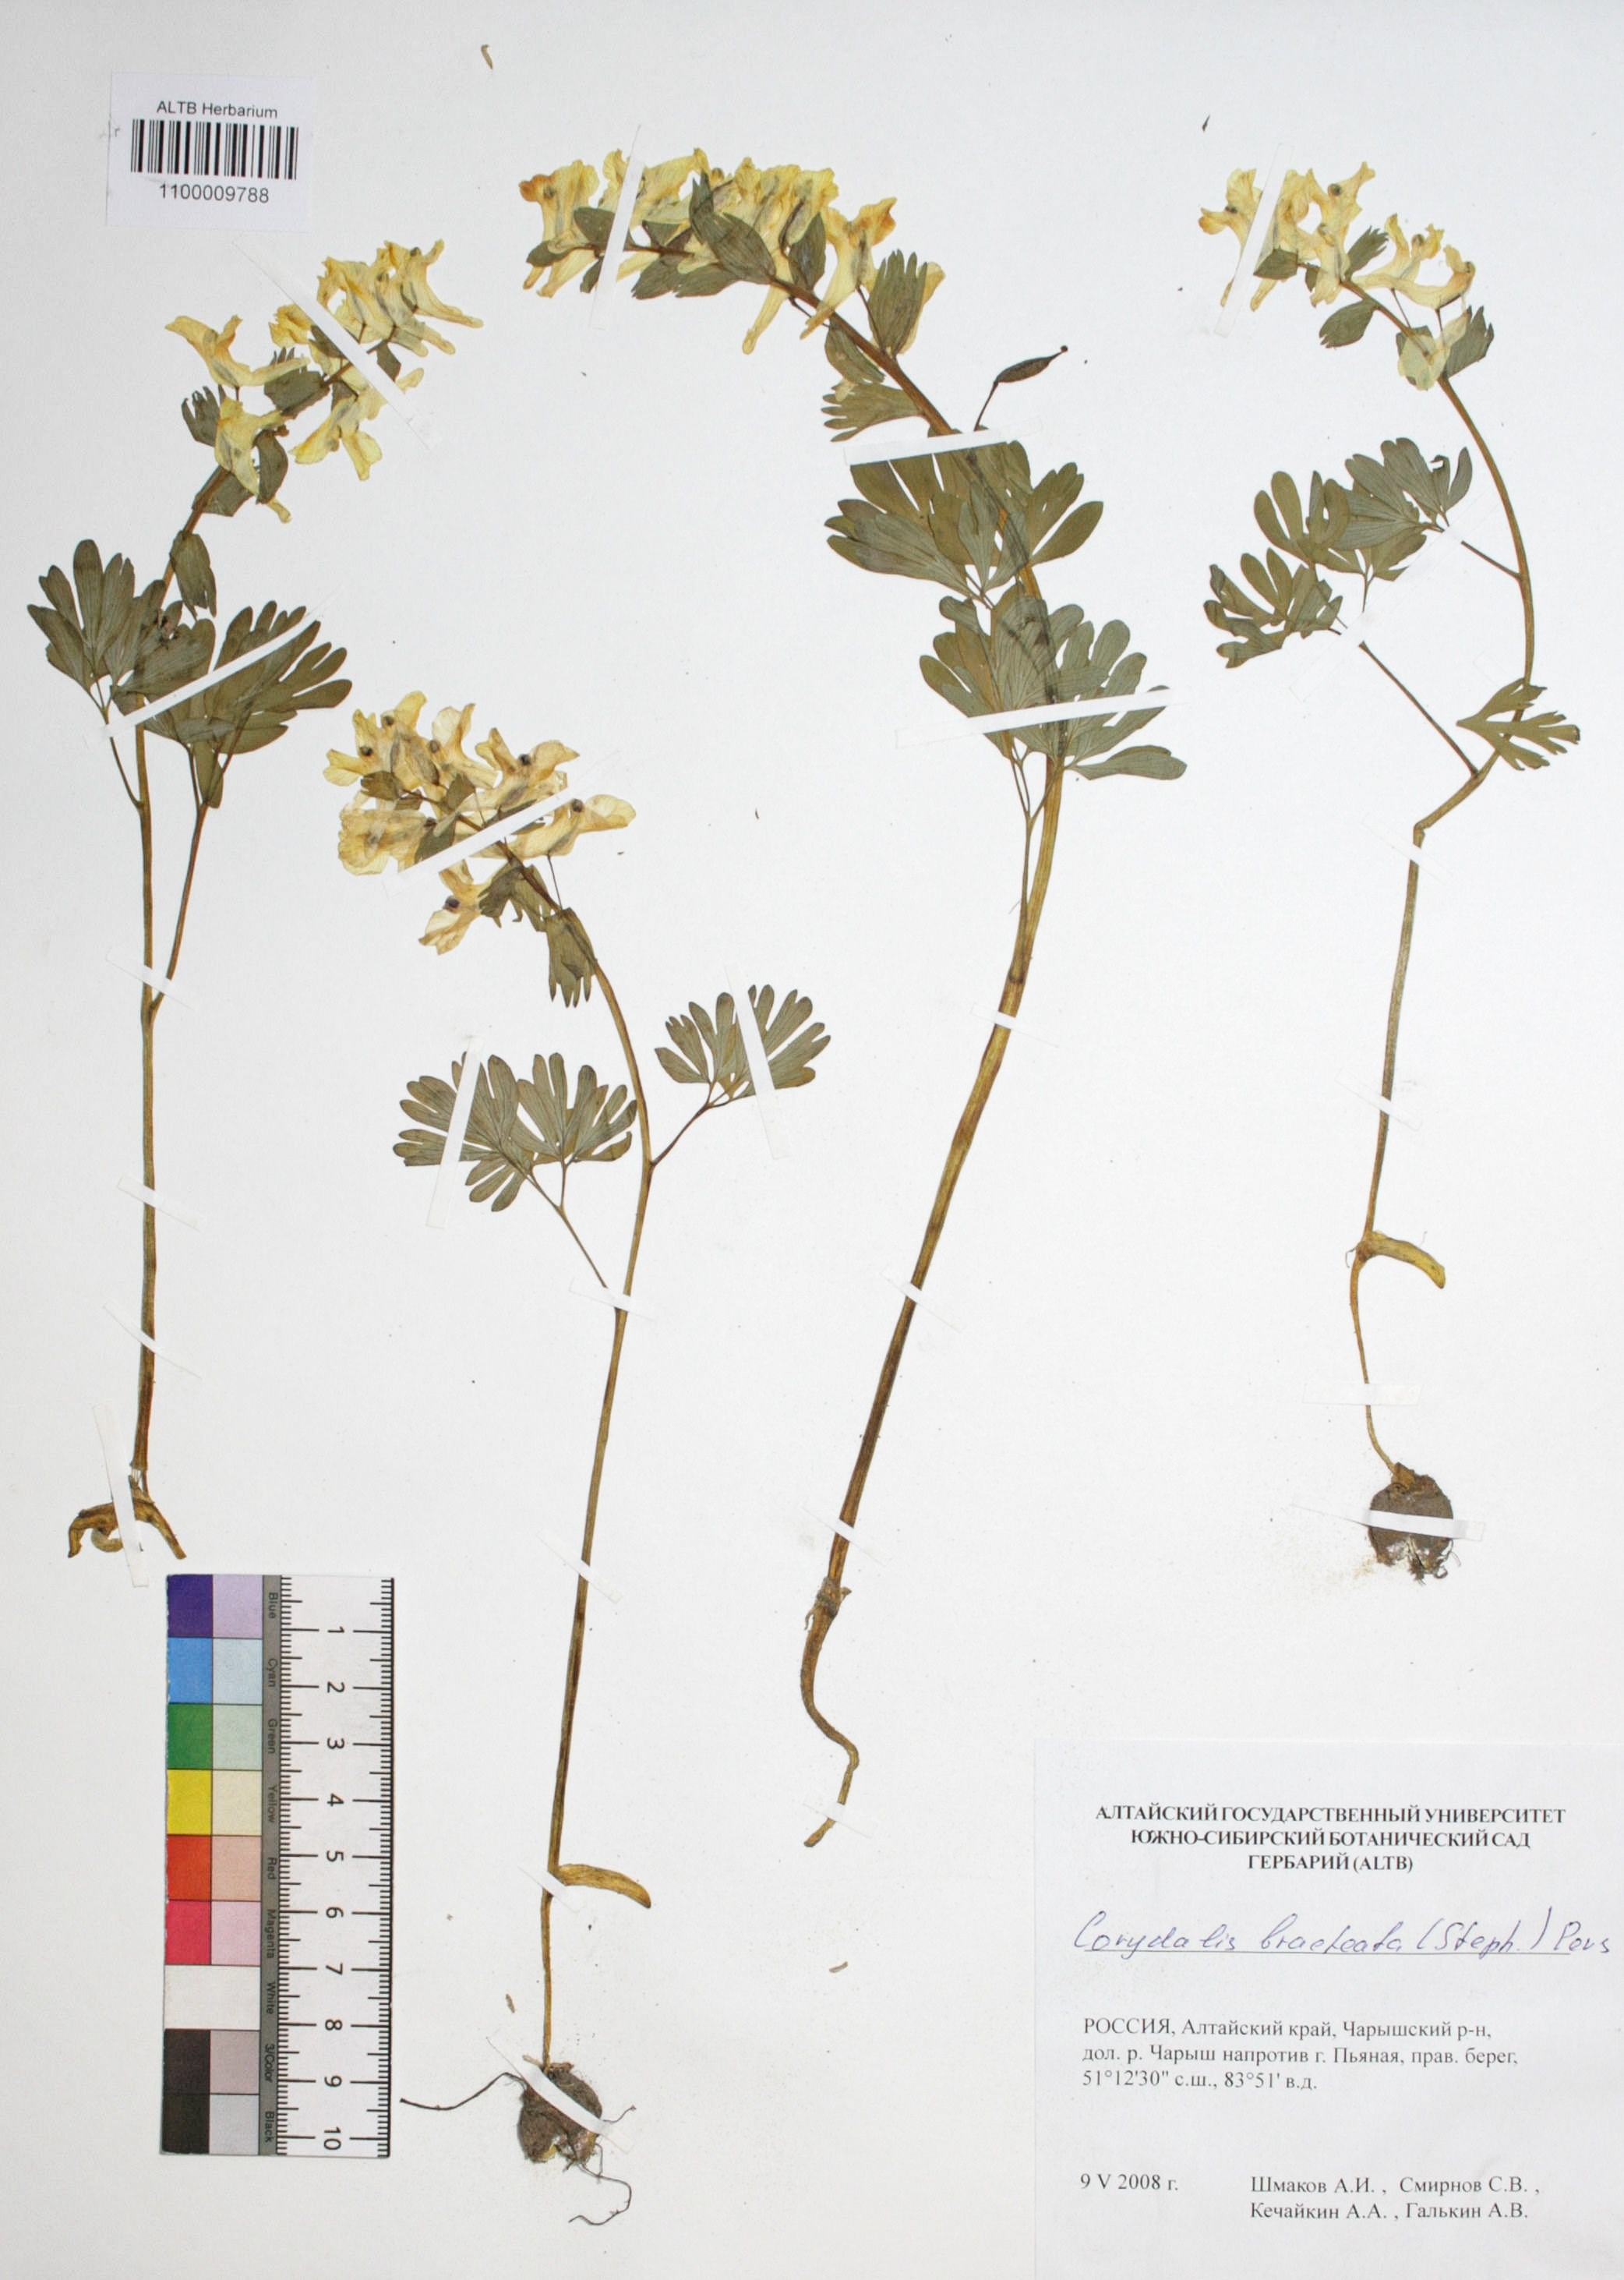 Corydalis bracteata (Steph.) Pers.